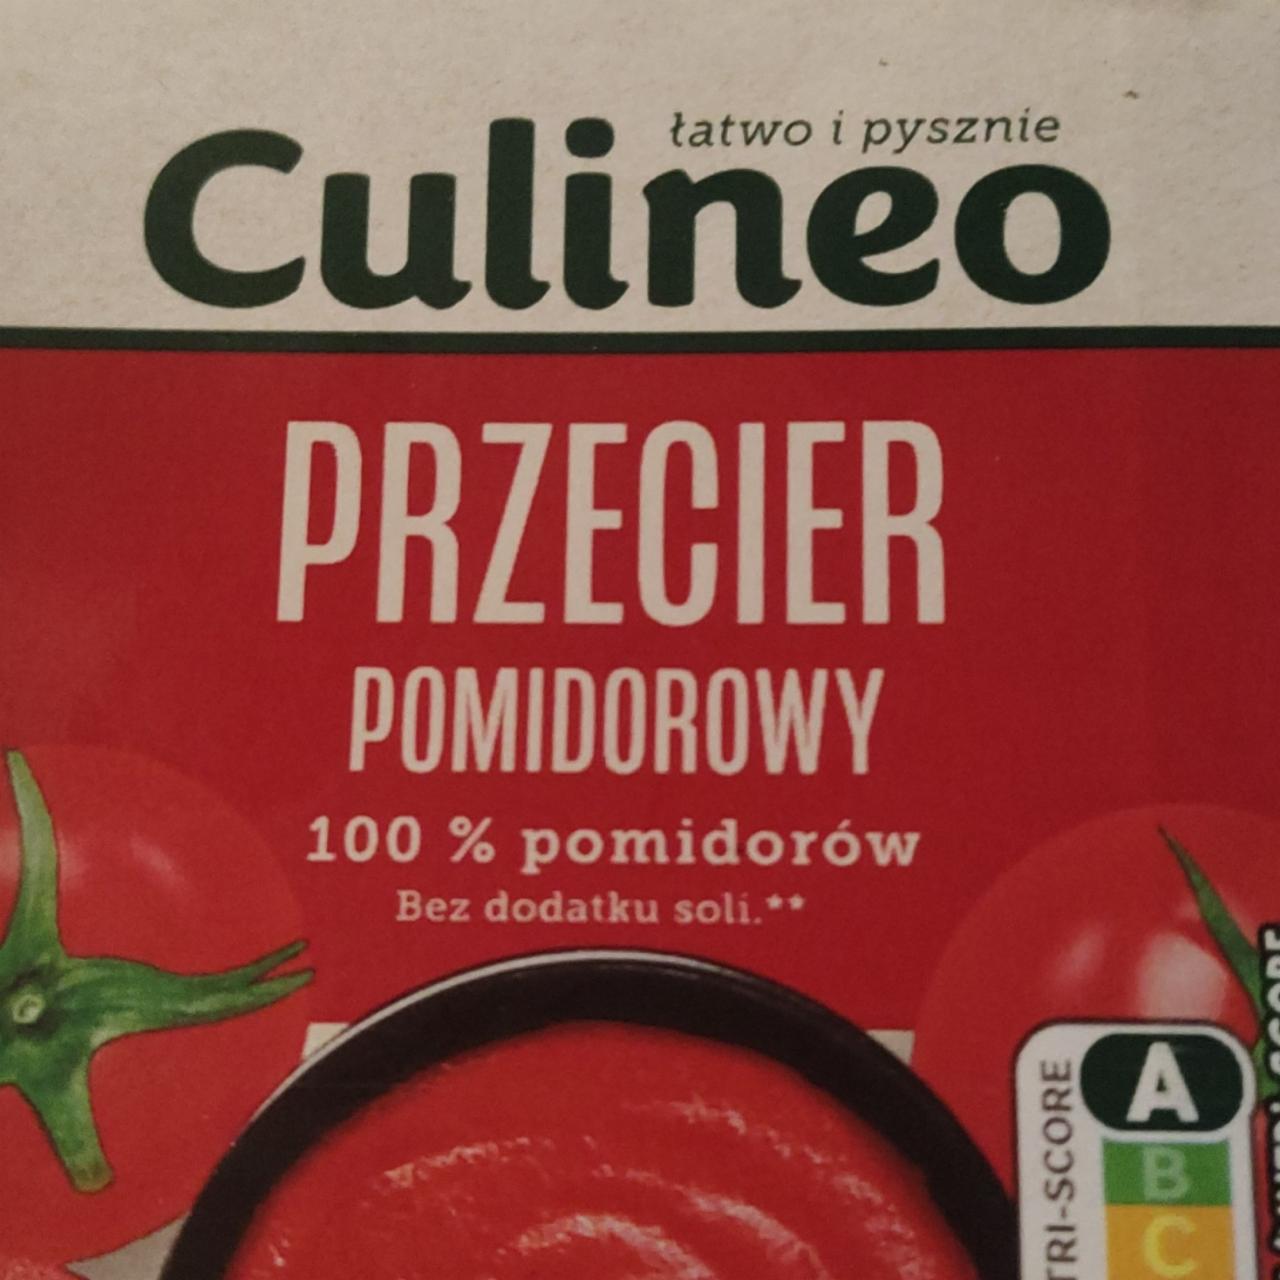 Zdjęcia - przecier pomidorowy 100% pomidorów Culineo